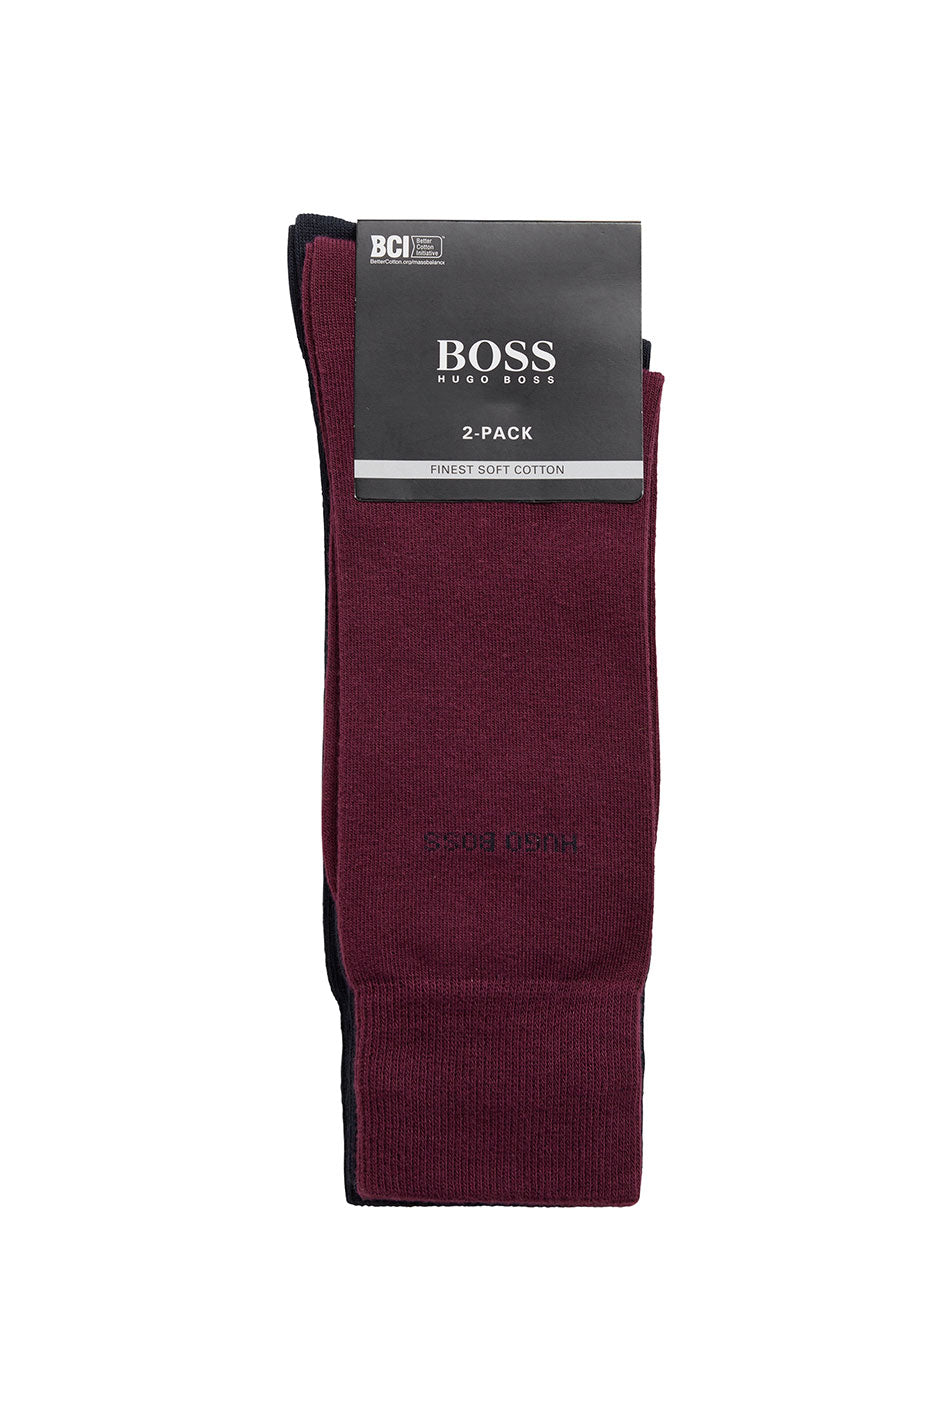 BOSS 2 Pack Unisex Socks